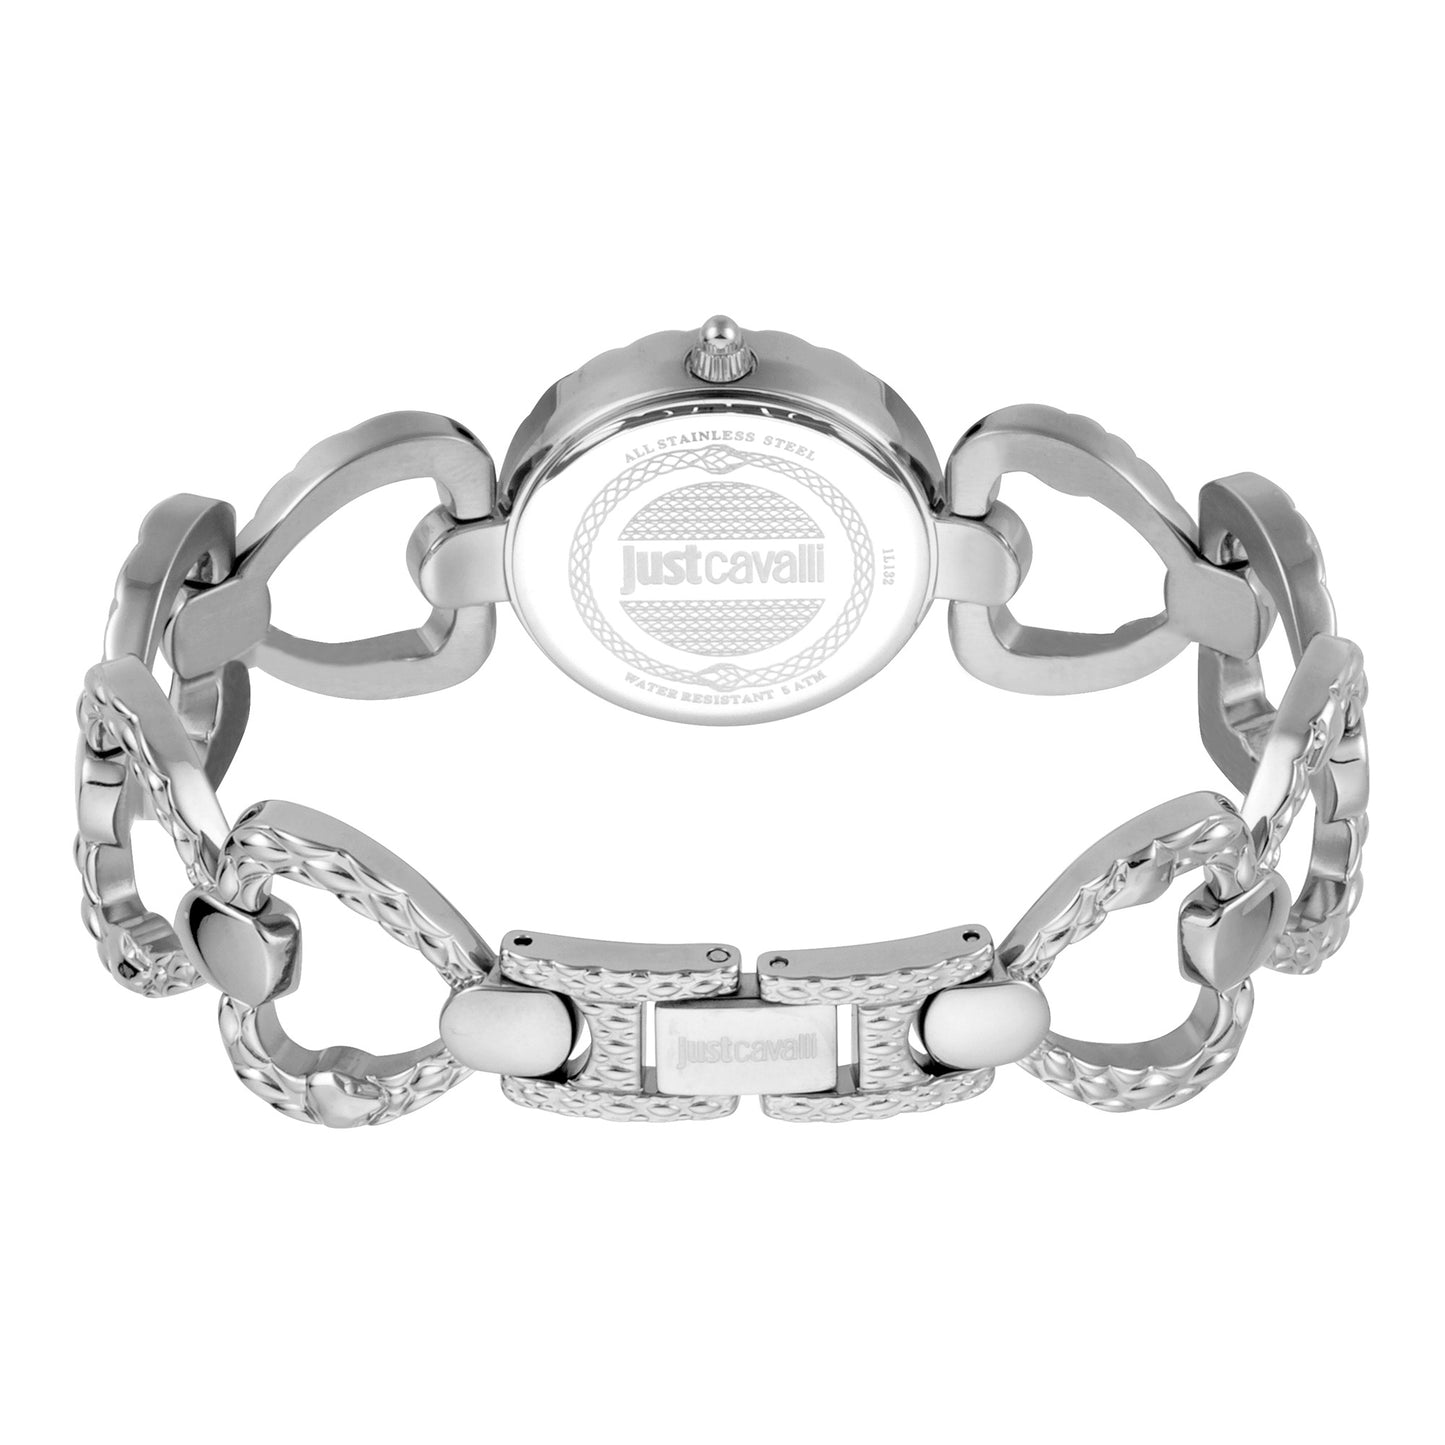 JUST CAVALLI Link Bracelet Steel Silver Bing Watch